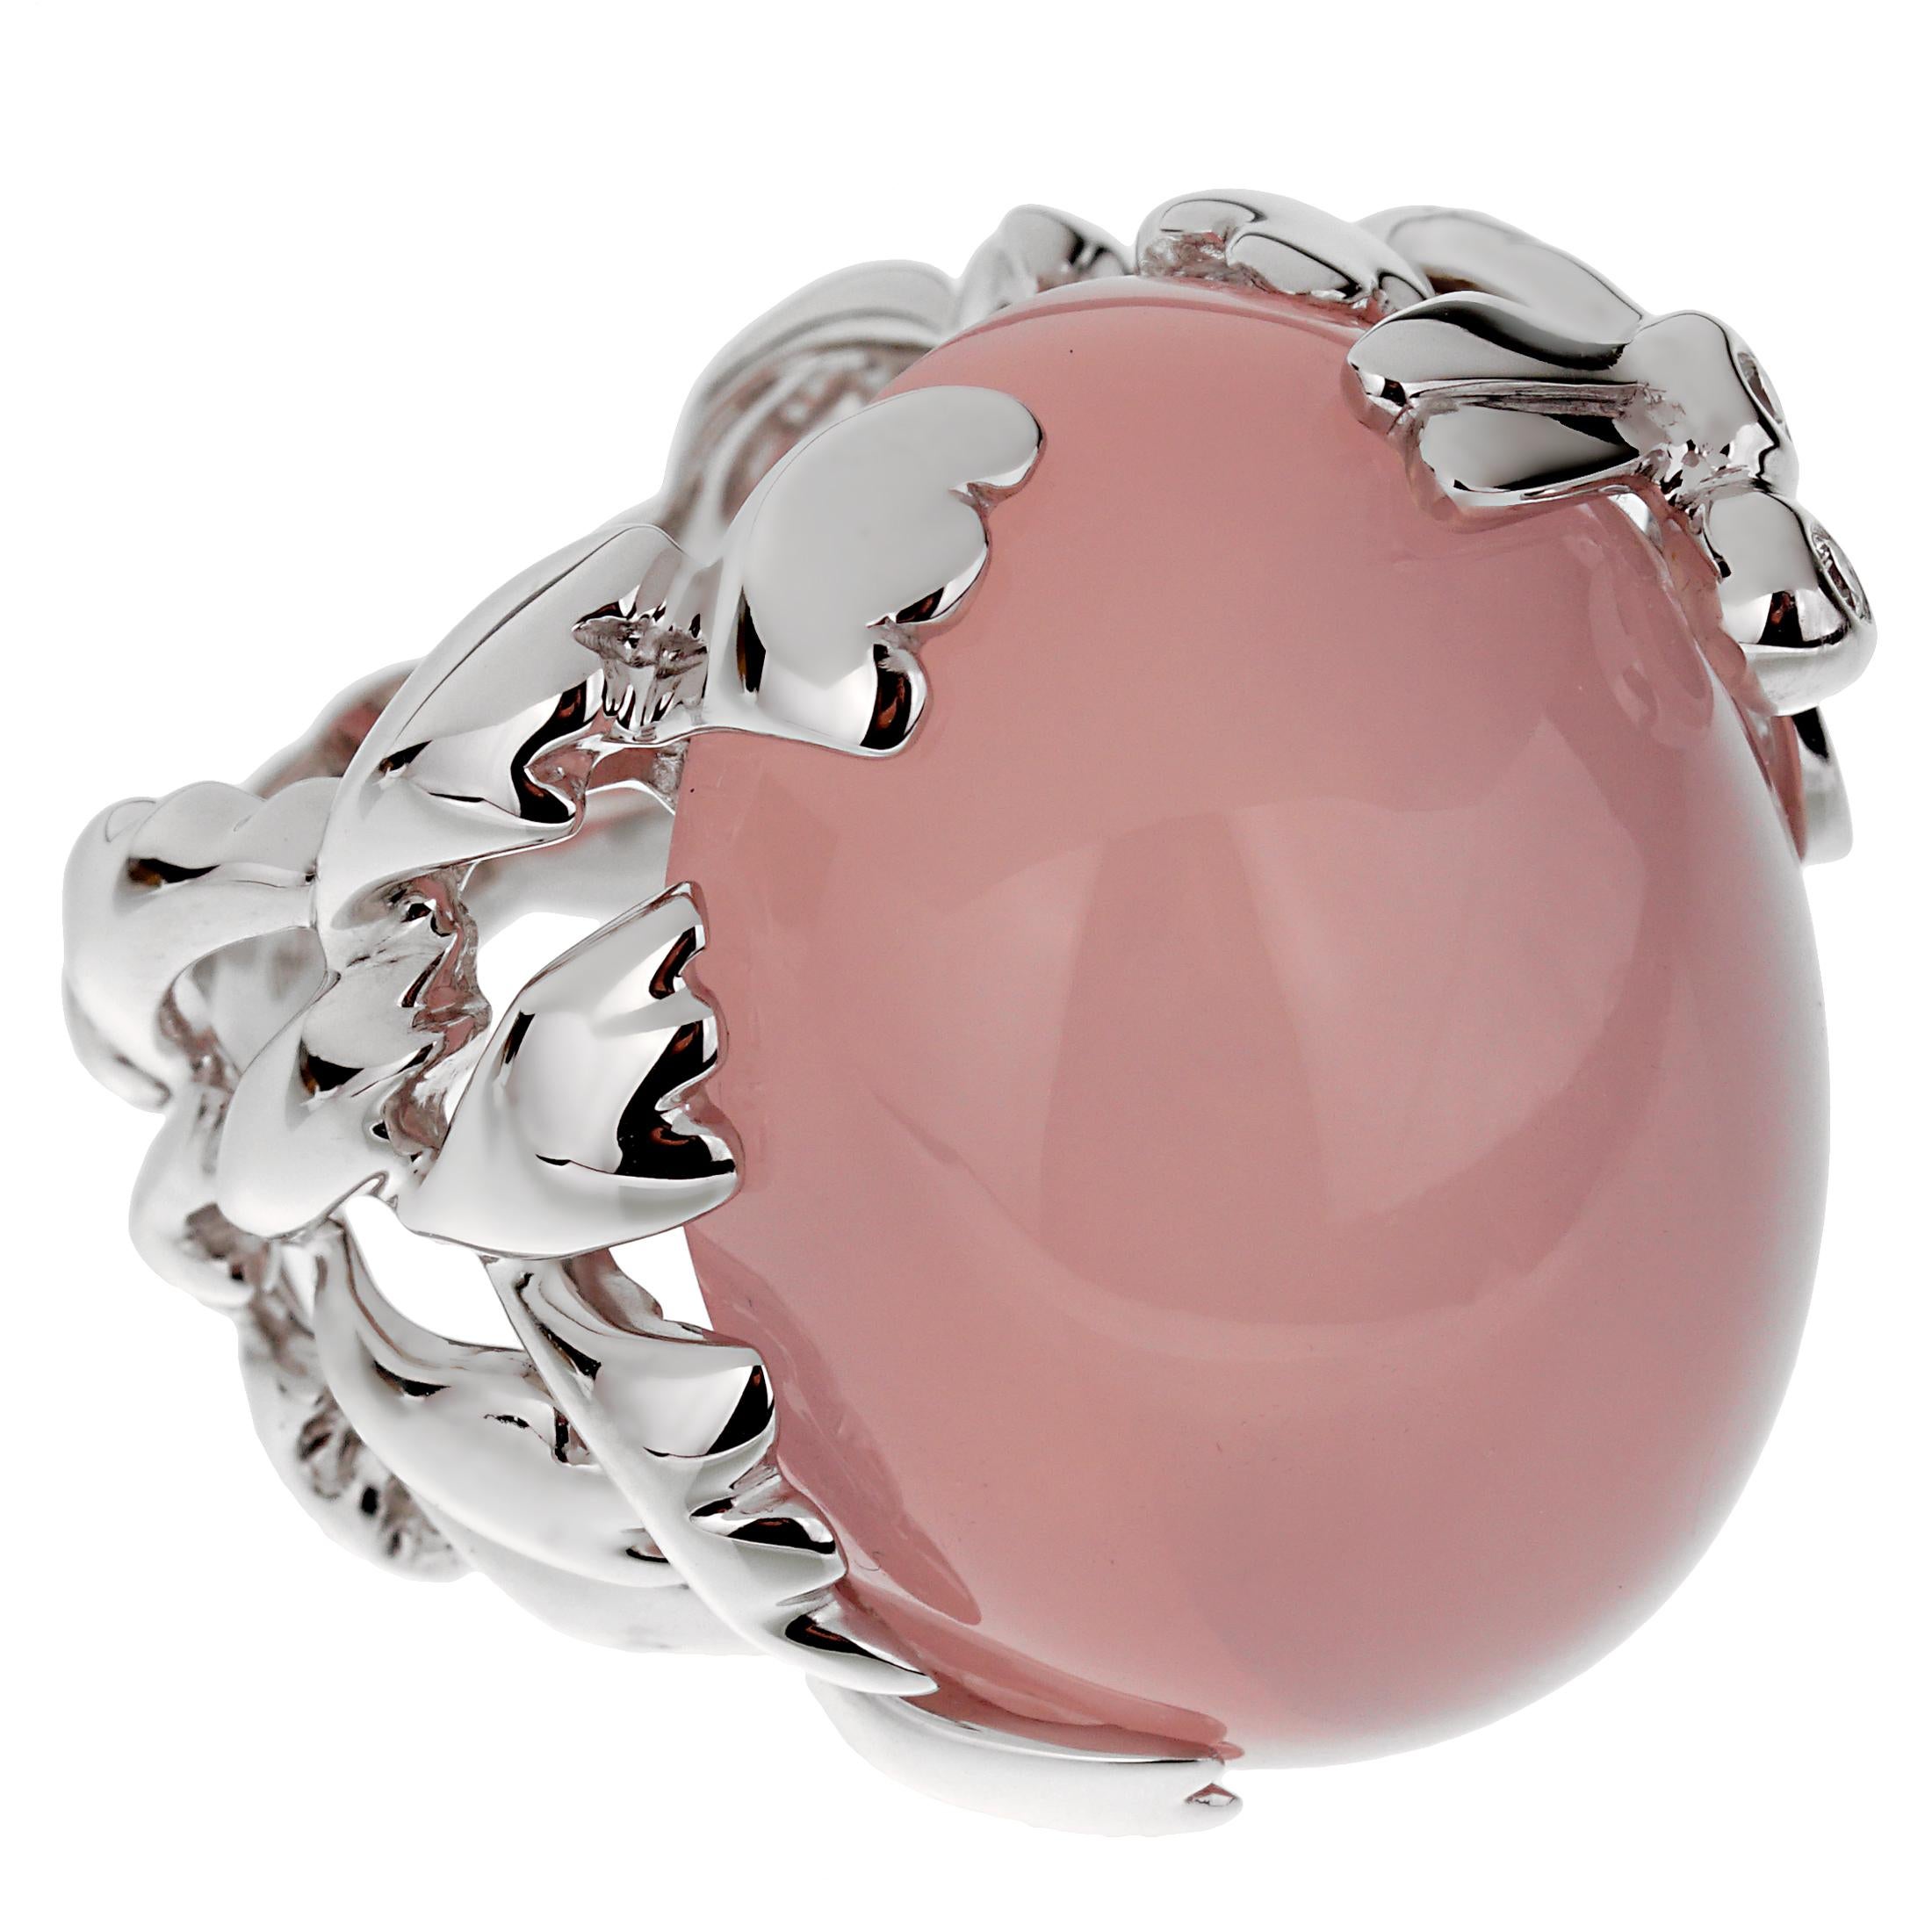 Ein aufsehenerregender Cocktailring von Christian Dior mit einer 50-karätigen Fassung aus rosa Quarz und einer Libelle, die mit 2 der schönsten runden Diamanten im Brillantschliff aus 18 Karat Weißgold besetzt ist. Der Ring misst eine Größe 54